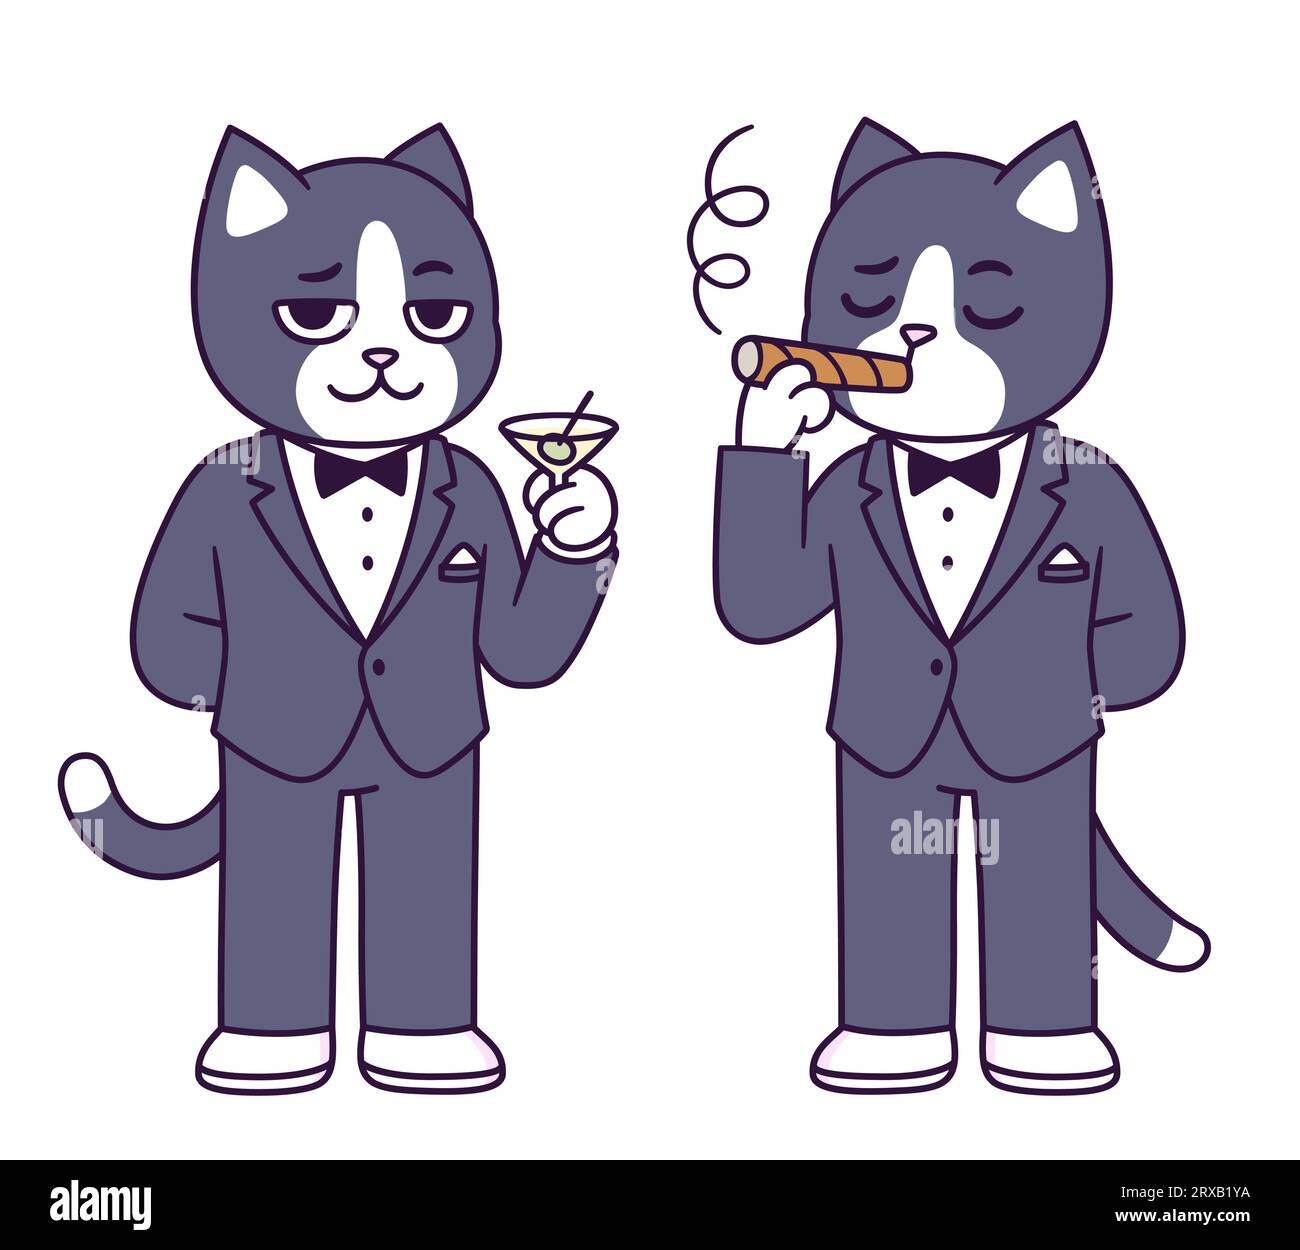 Personnage de dessin animé de chat Tuxedo. Chat drôle en costume de cravate noire tenant le verre de martini et fumant le cigare. Illustration vectorielle mignonne. Illustration de Vecteur